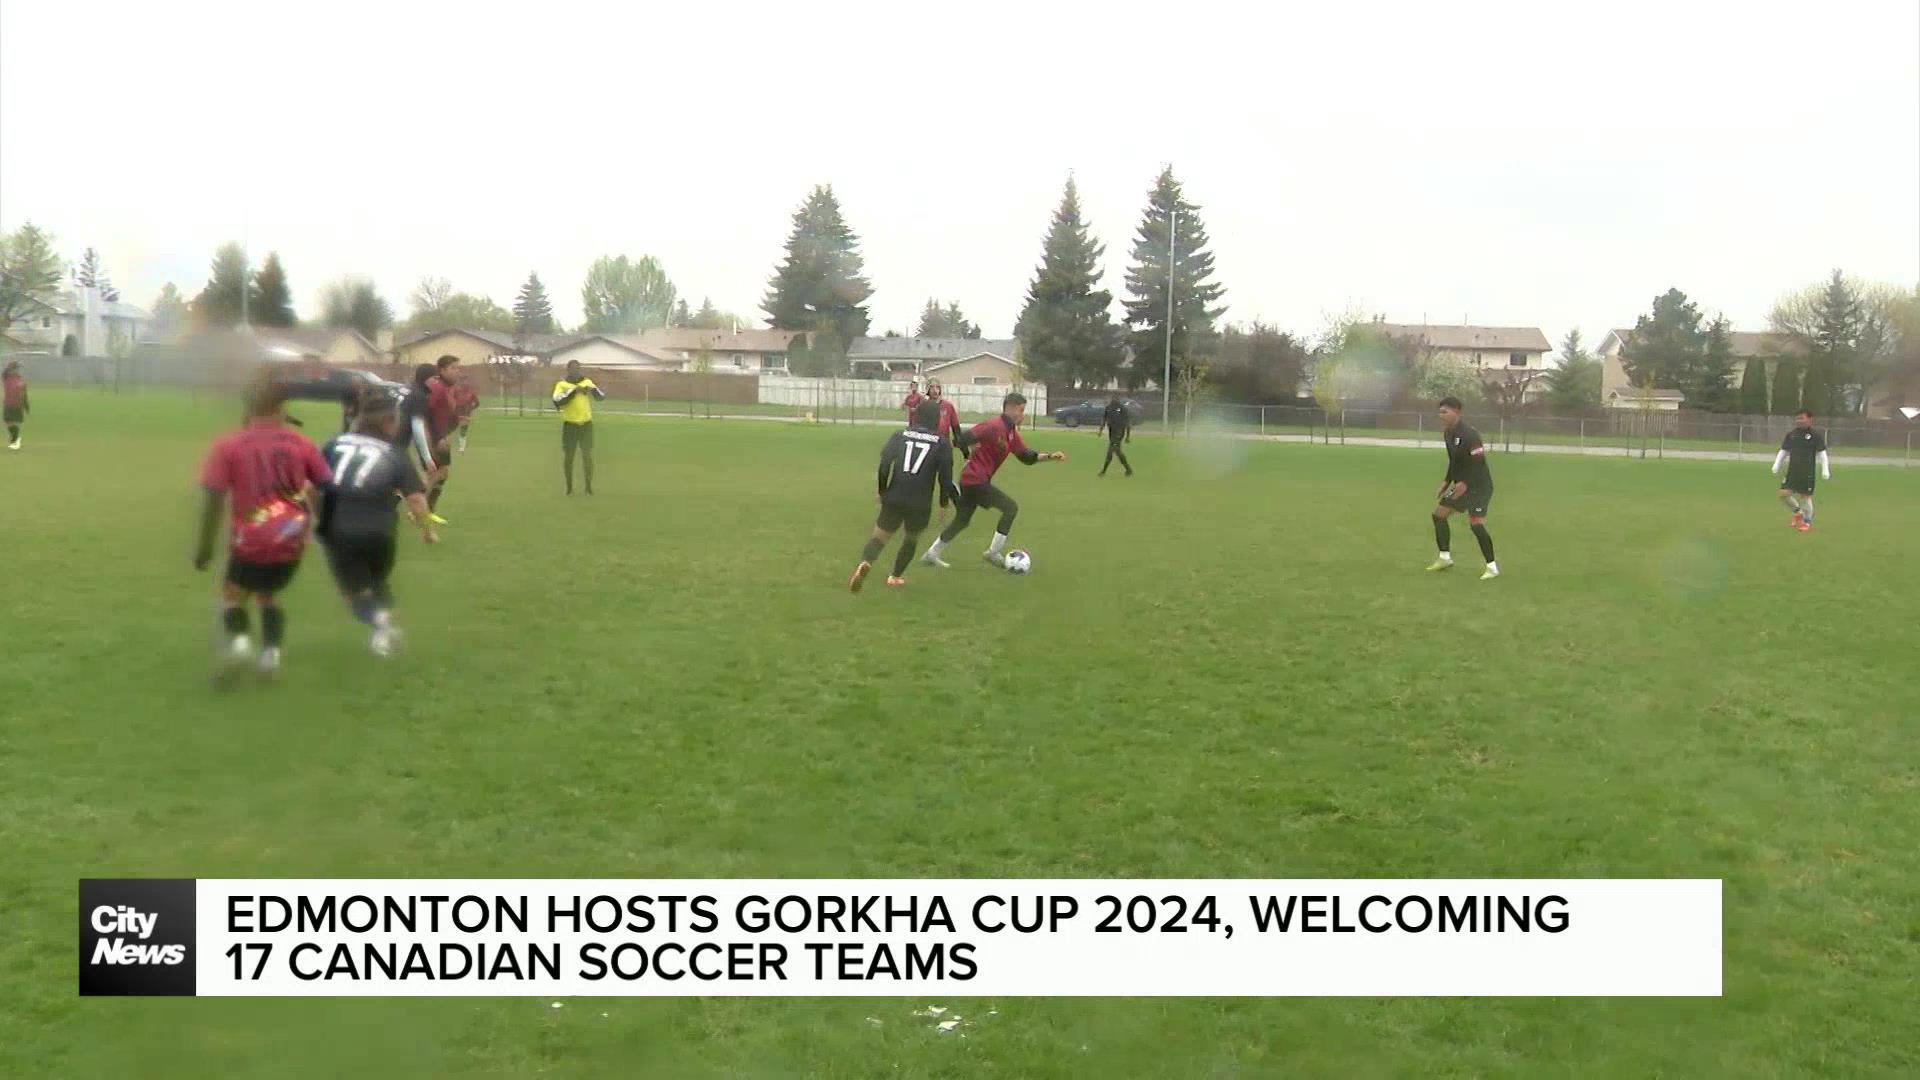 Over dozen Canadian soccer teams in Edmonton for Dr. Ai Gurung Memorial Gorkha Cup 2024